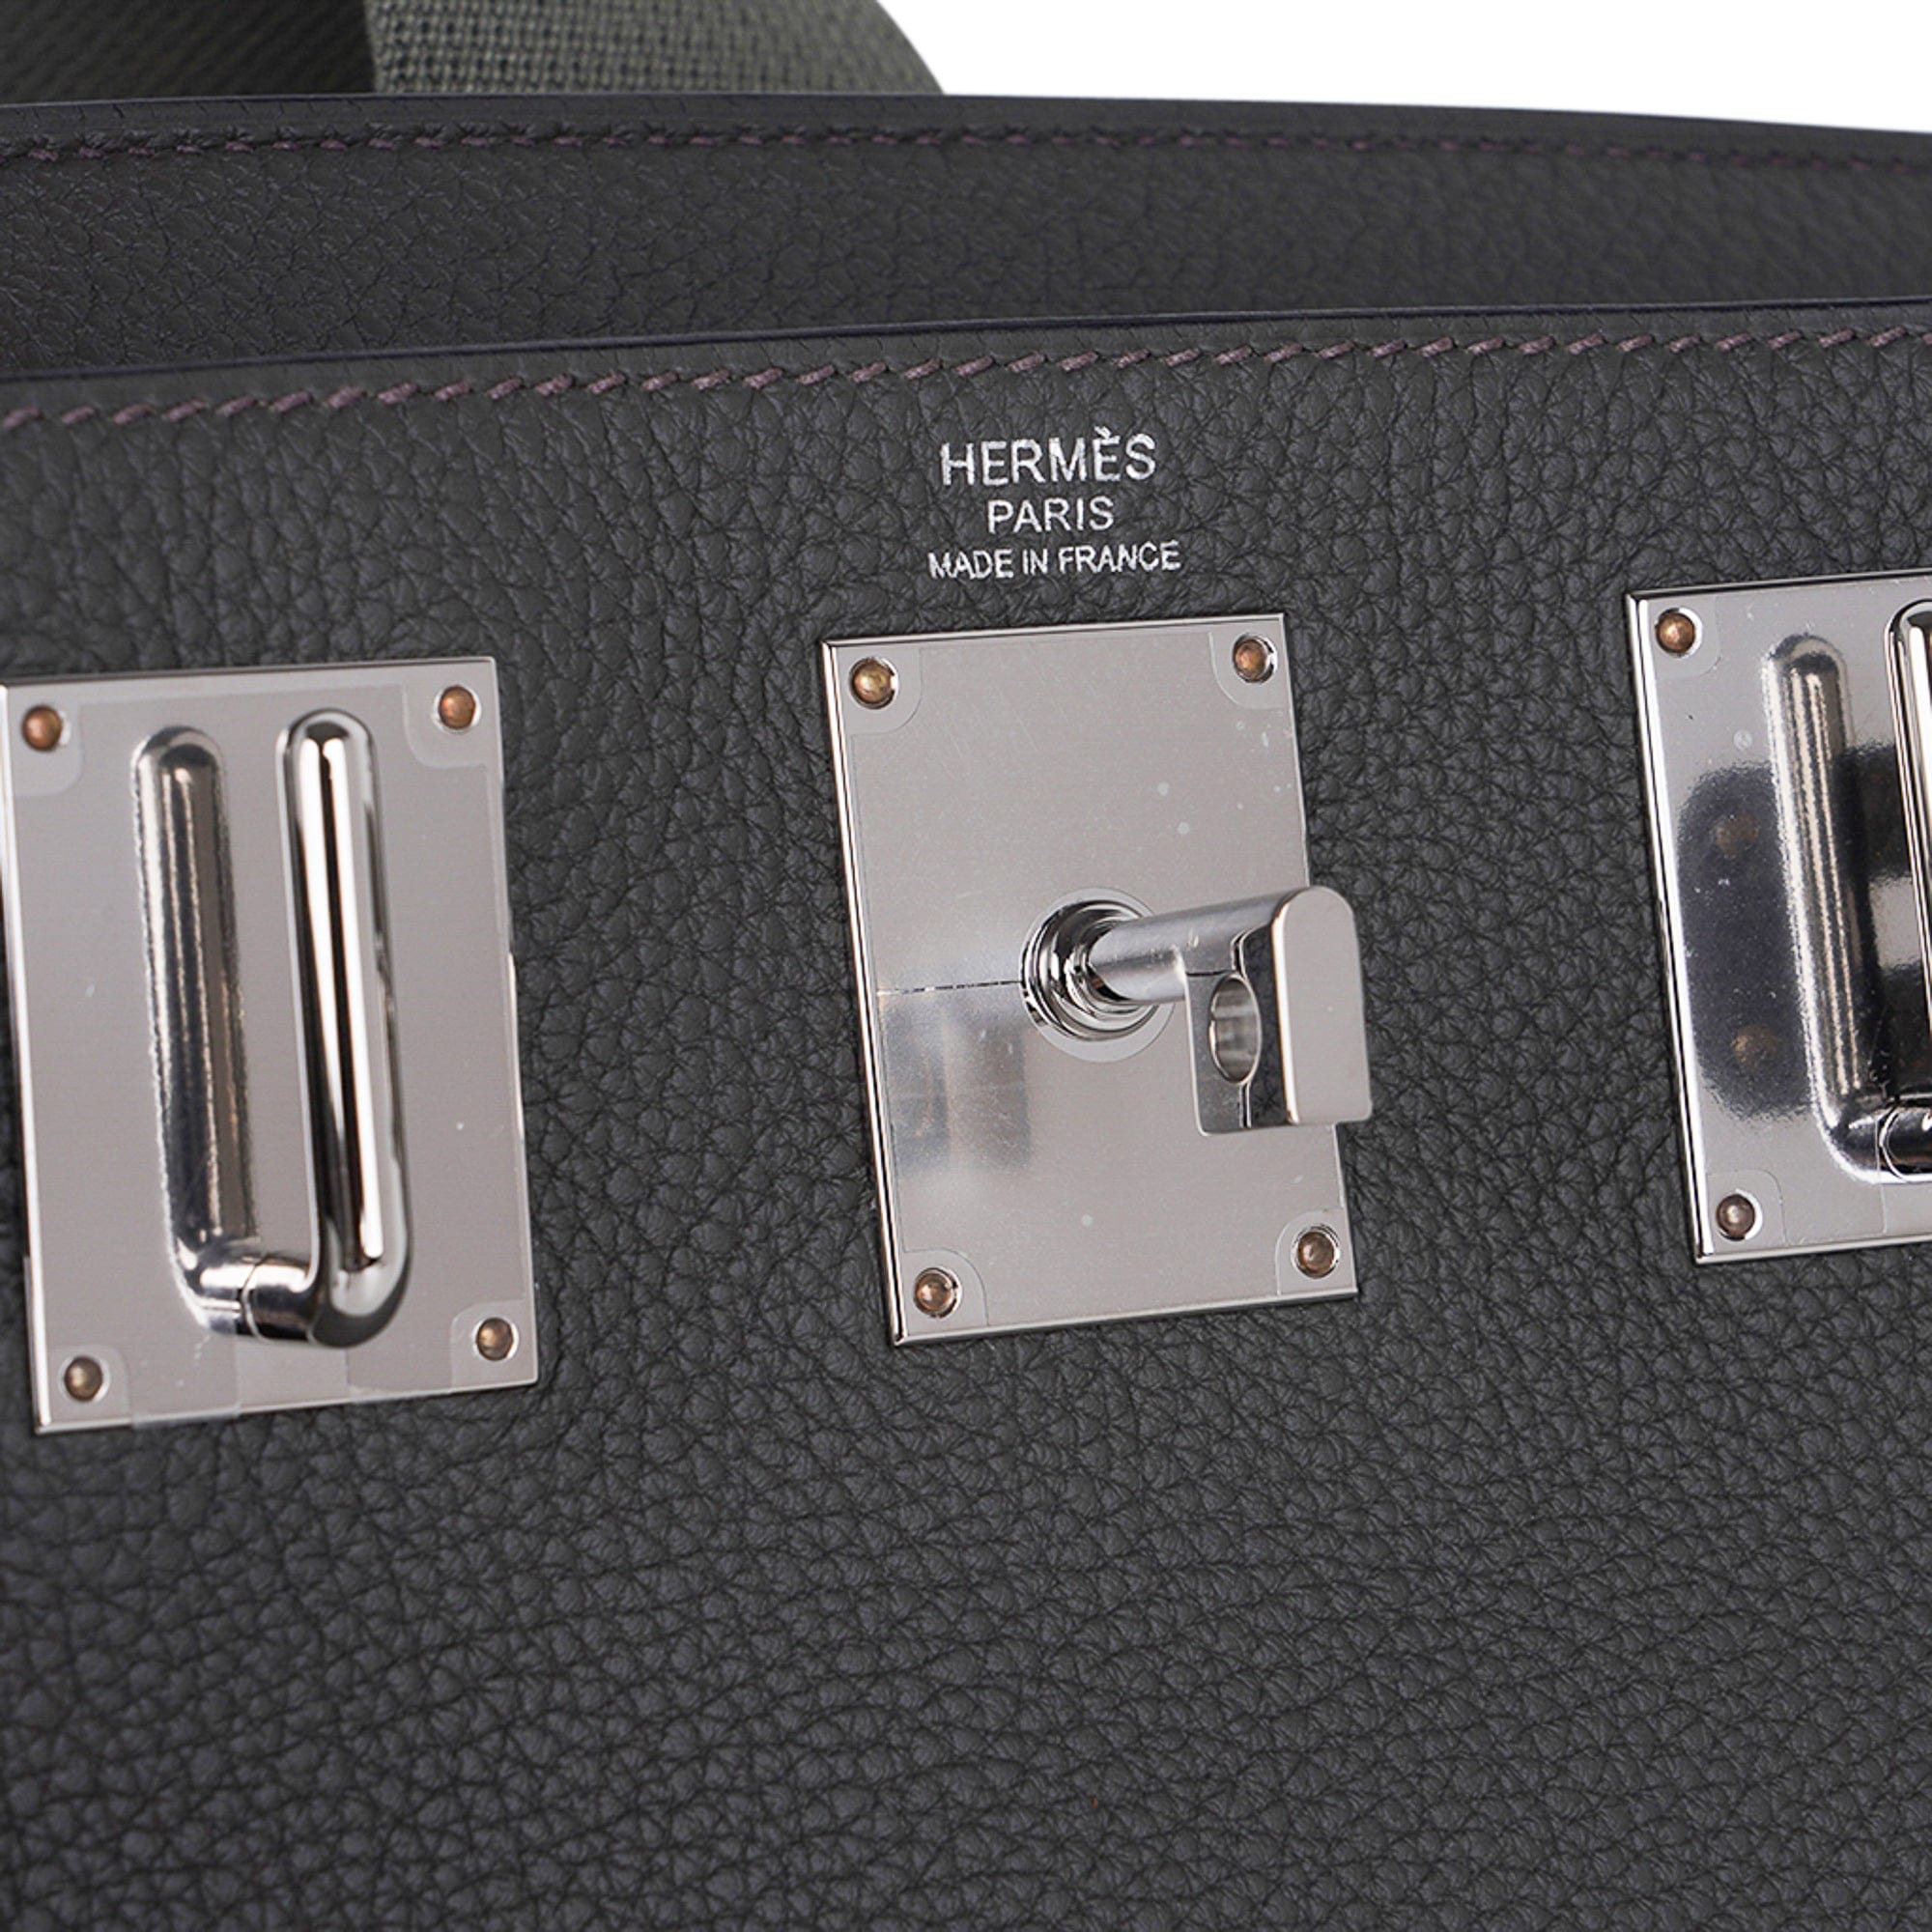 Sell Hermès Hac A Dos PM Bag - Blue